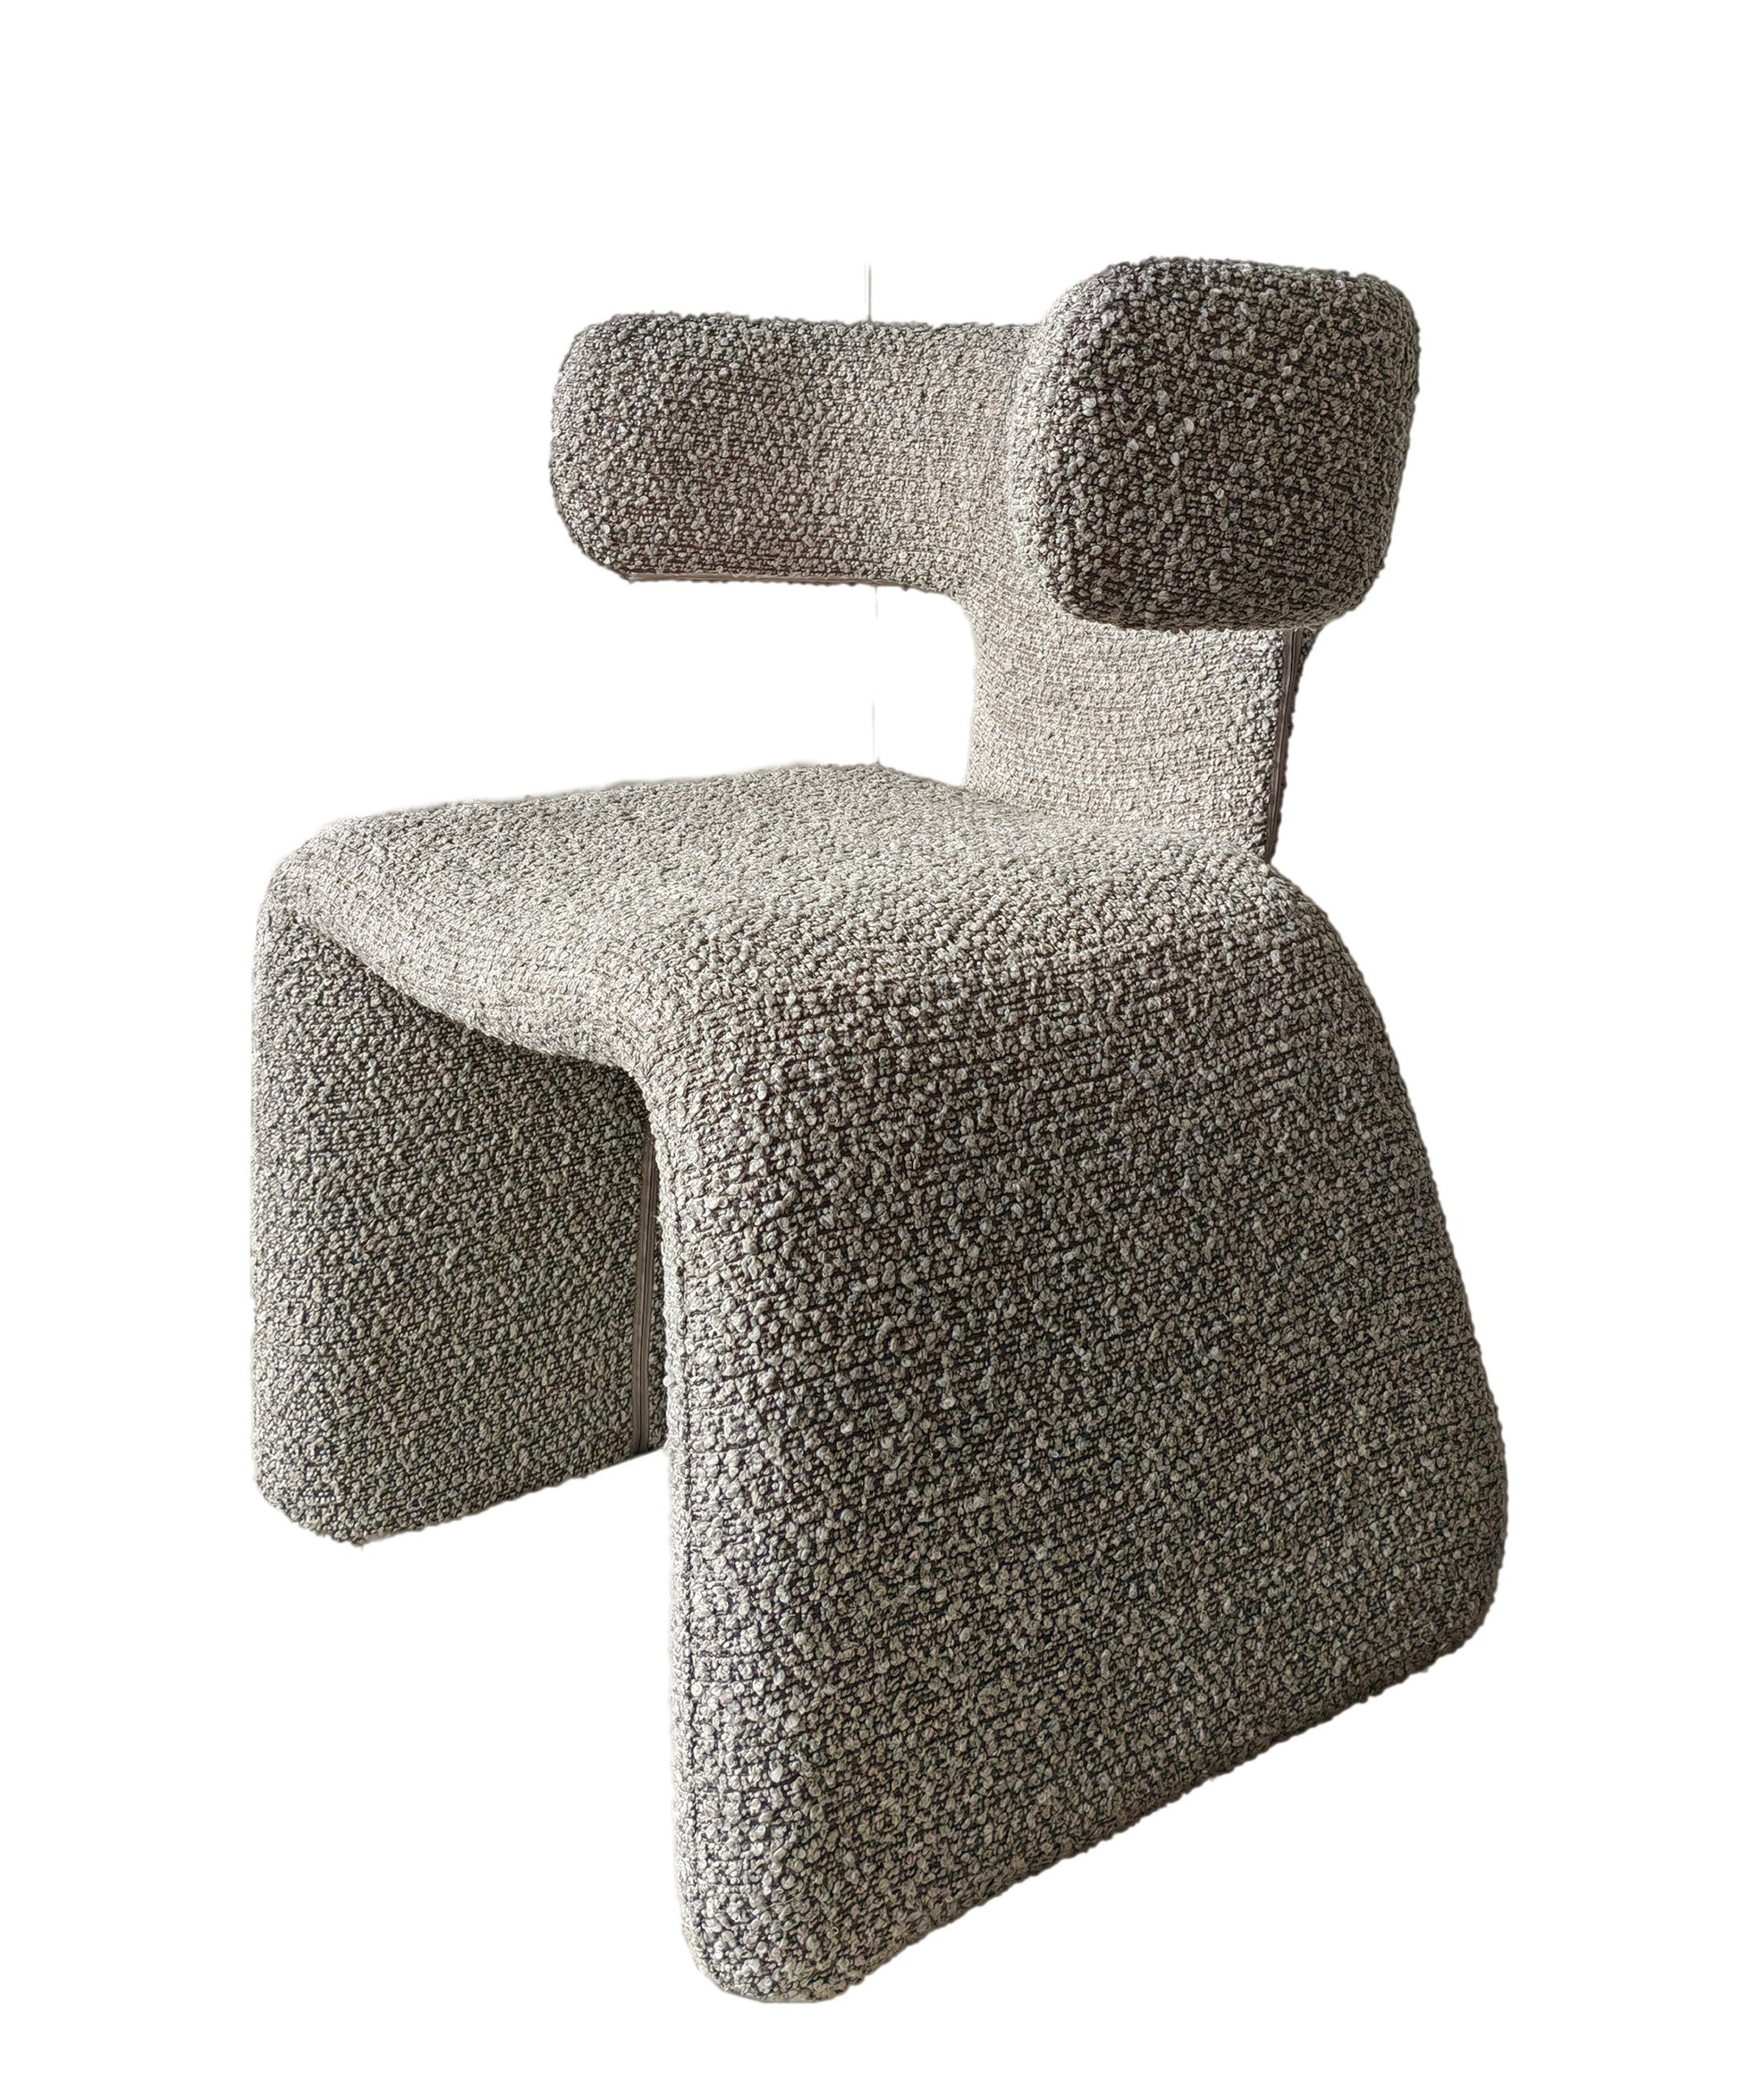 Modrest Bergman - Modern Light Grey Fabric Dining Chair